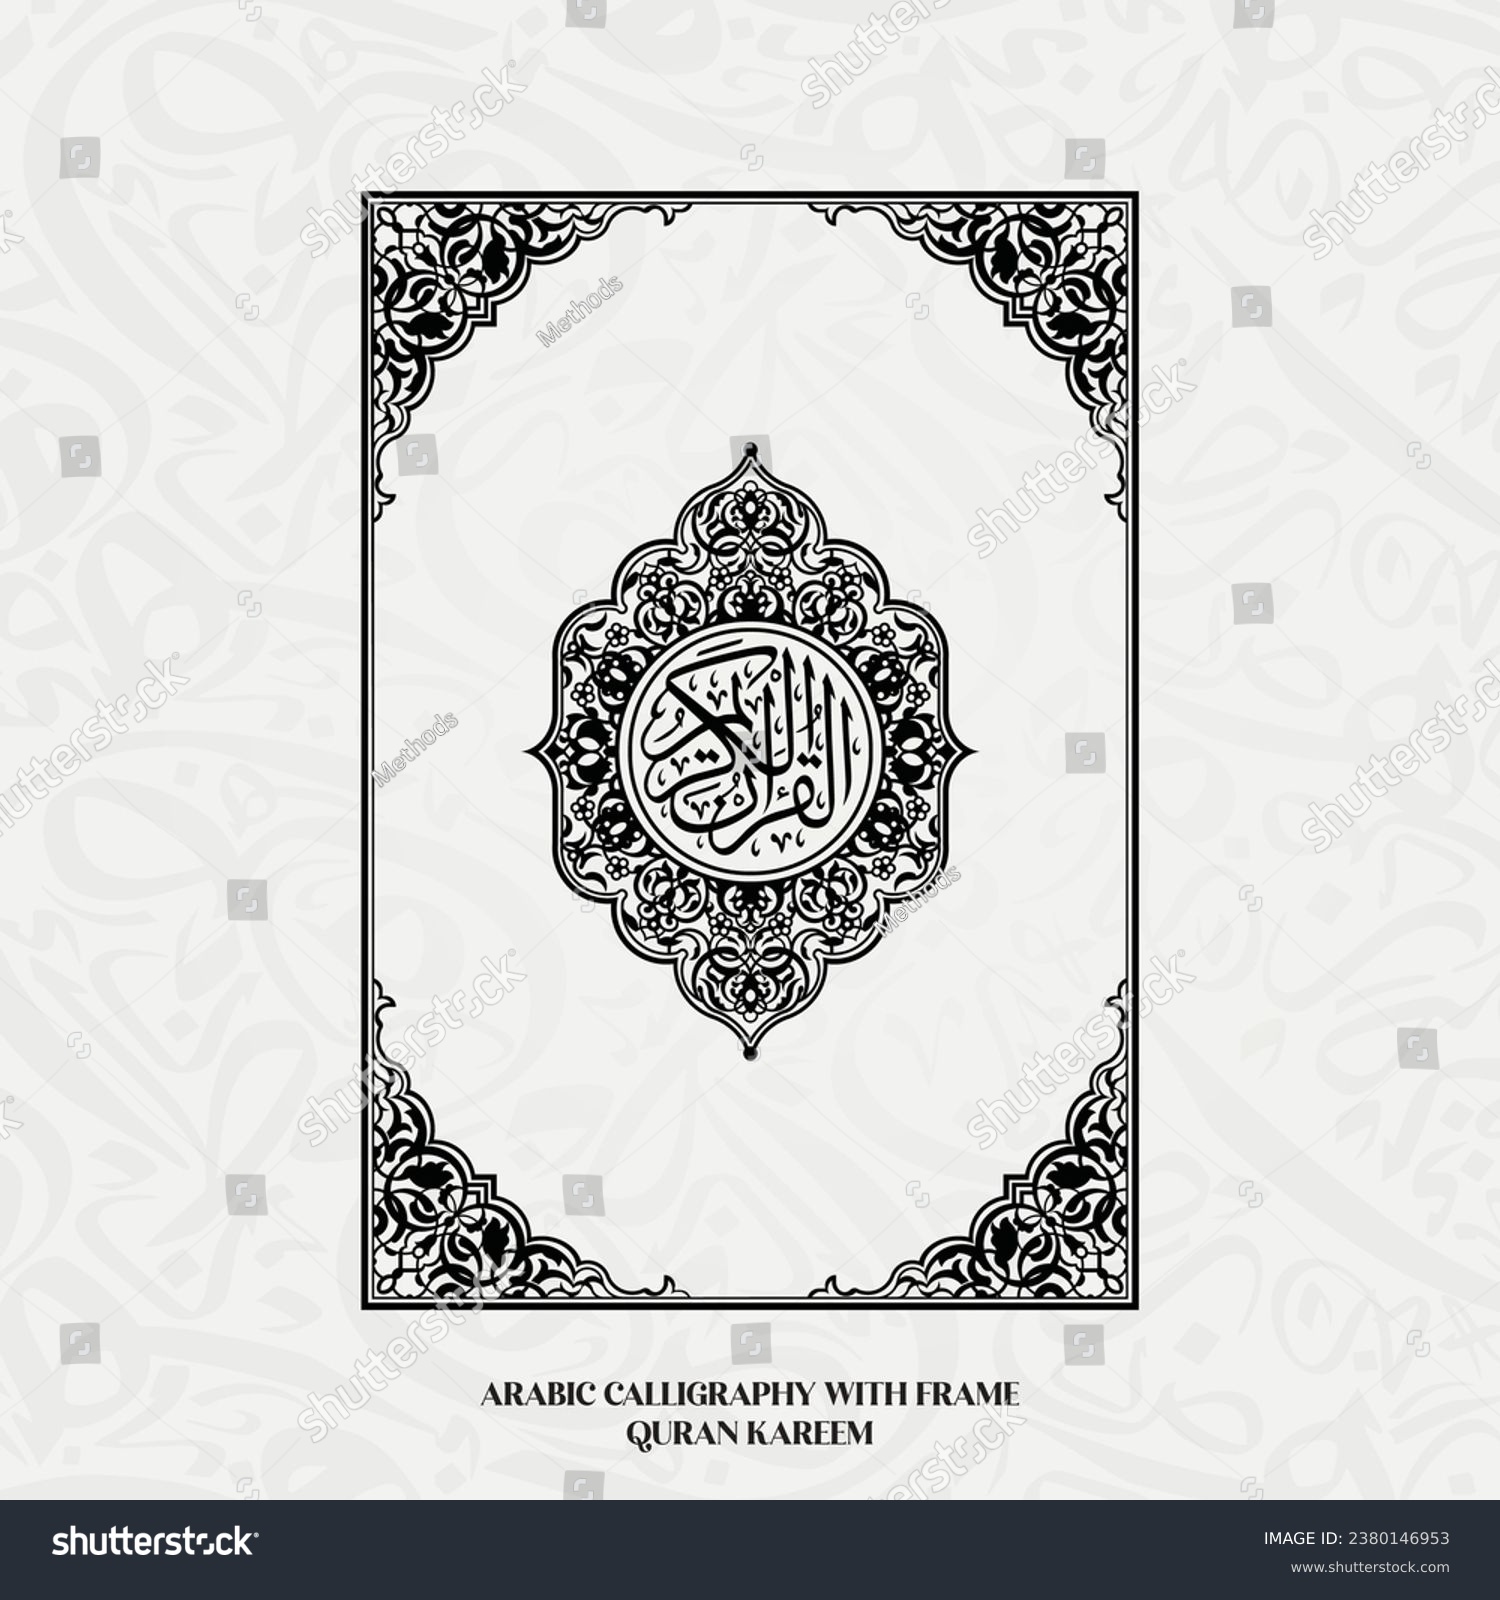 SVG of Al Quran Al Kareem Islamic Calligraphy, The Muslim Holy Book Quran kareem  Quran Majeed.  svg